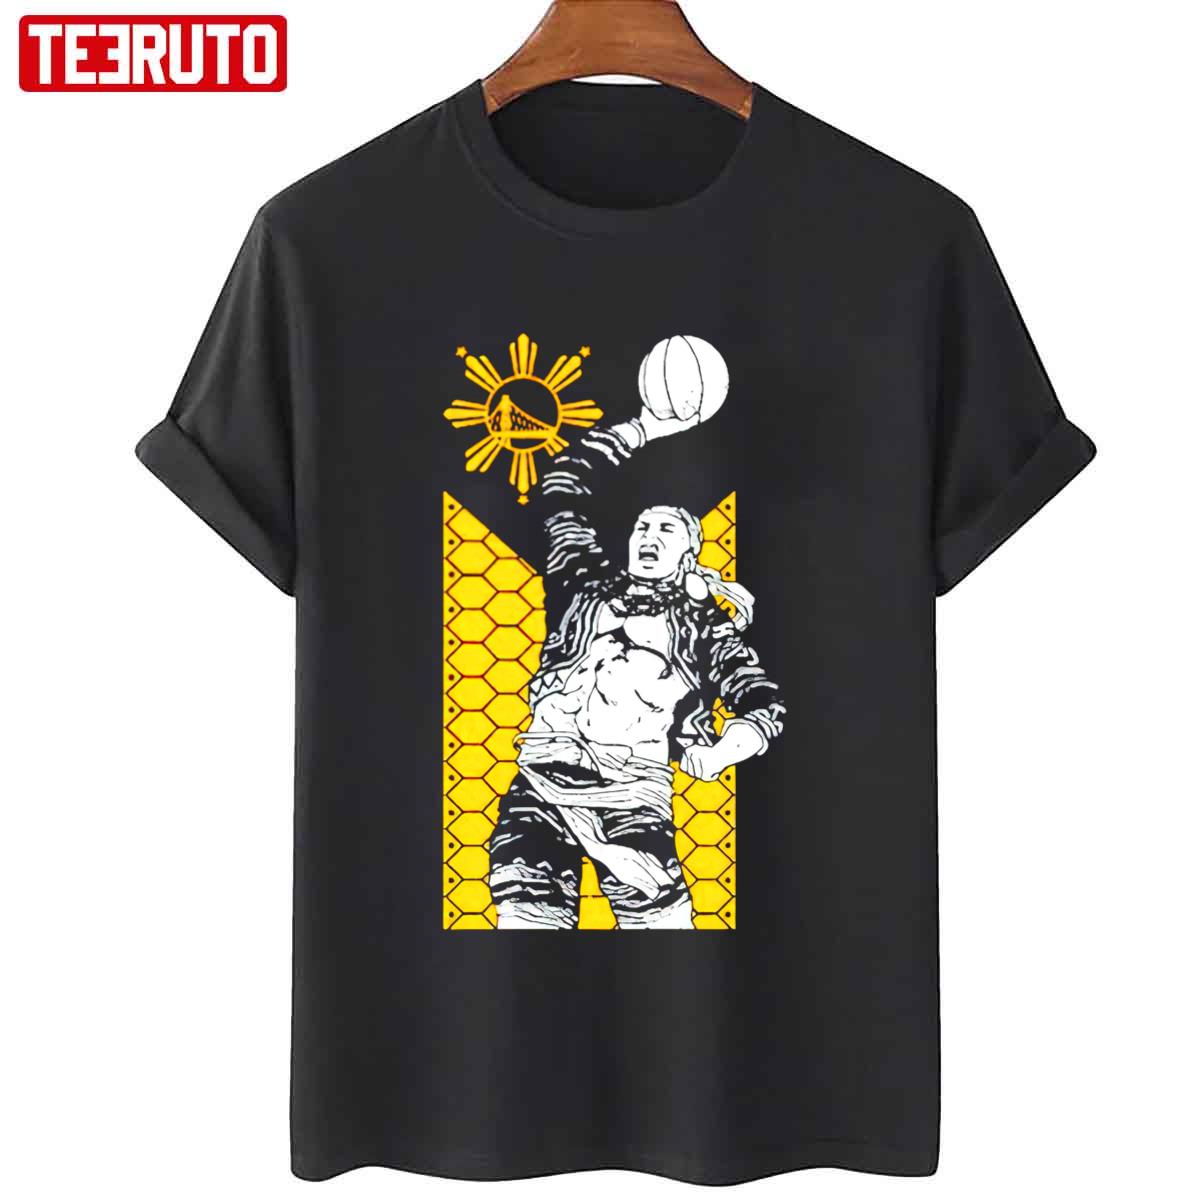 Warriors Filipino Heritage Unisex T-Shirt